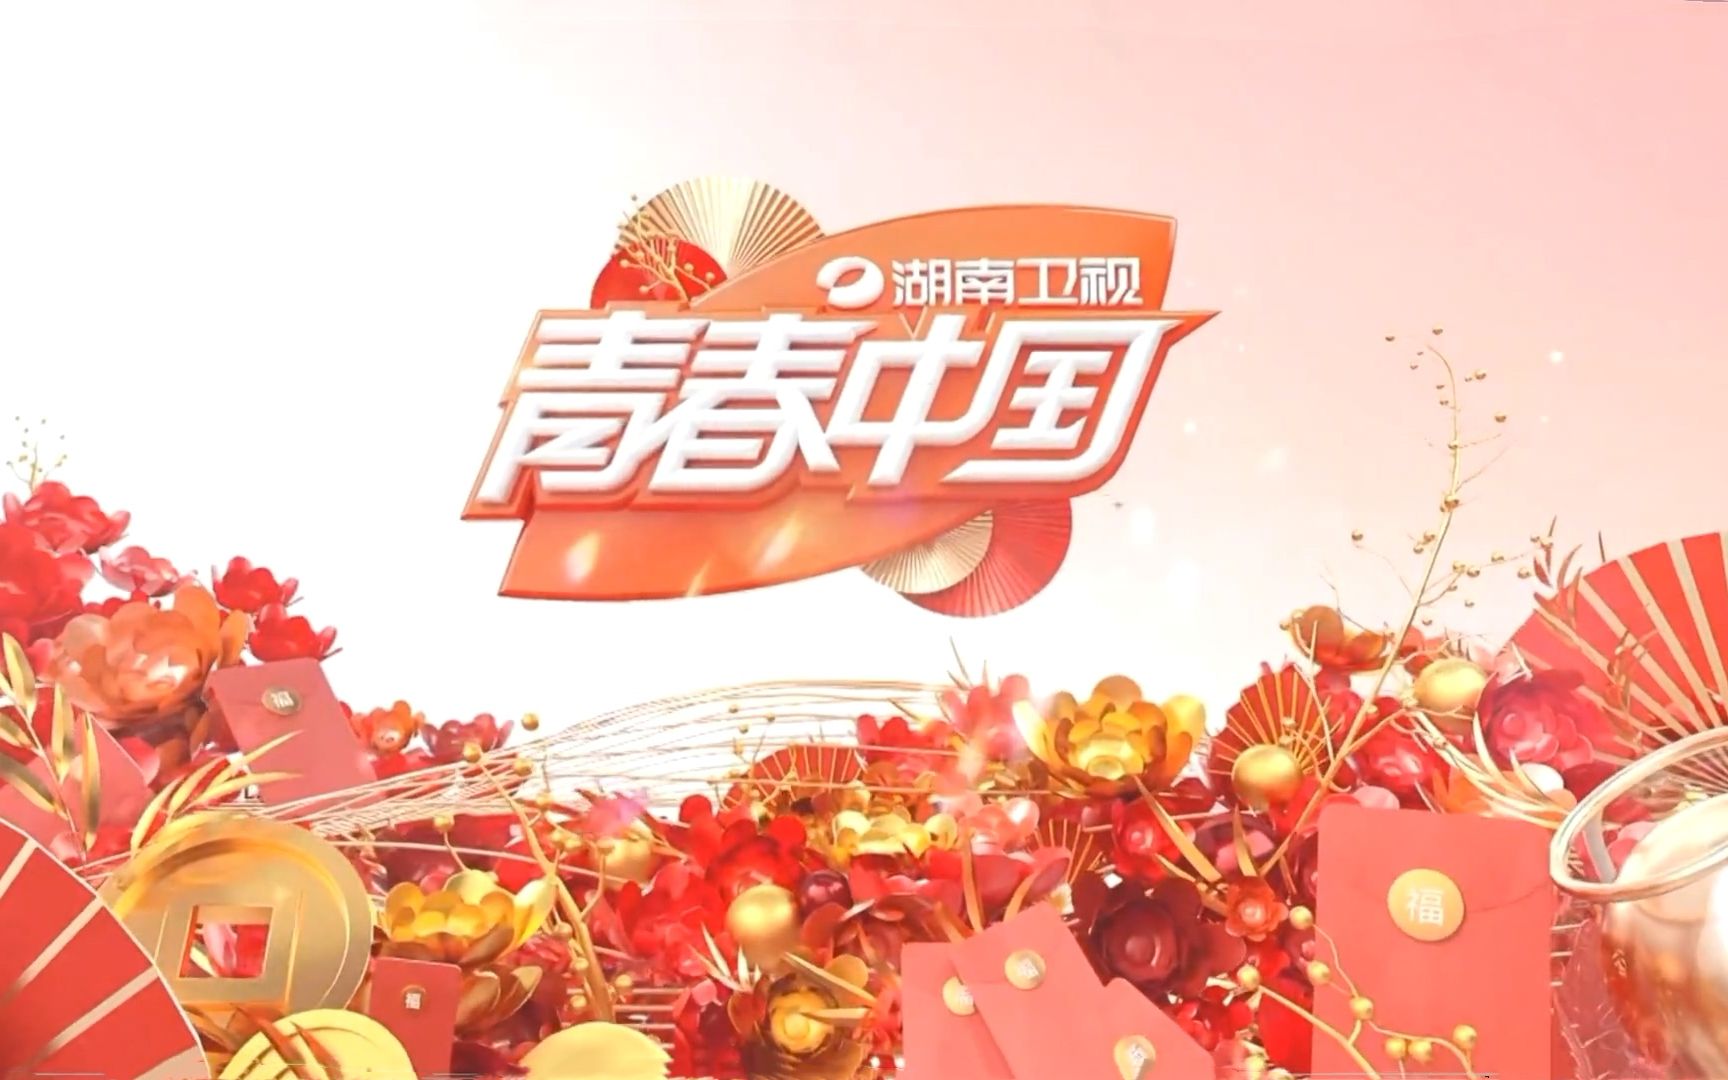 湖南卫视2010年包装图片